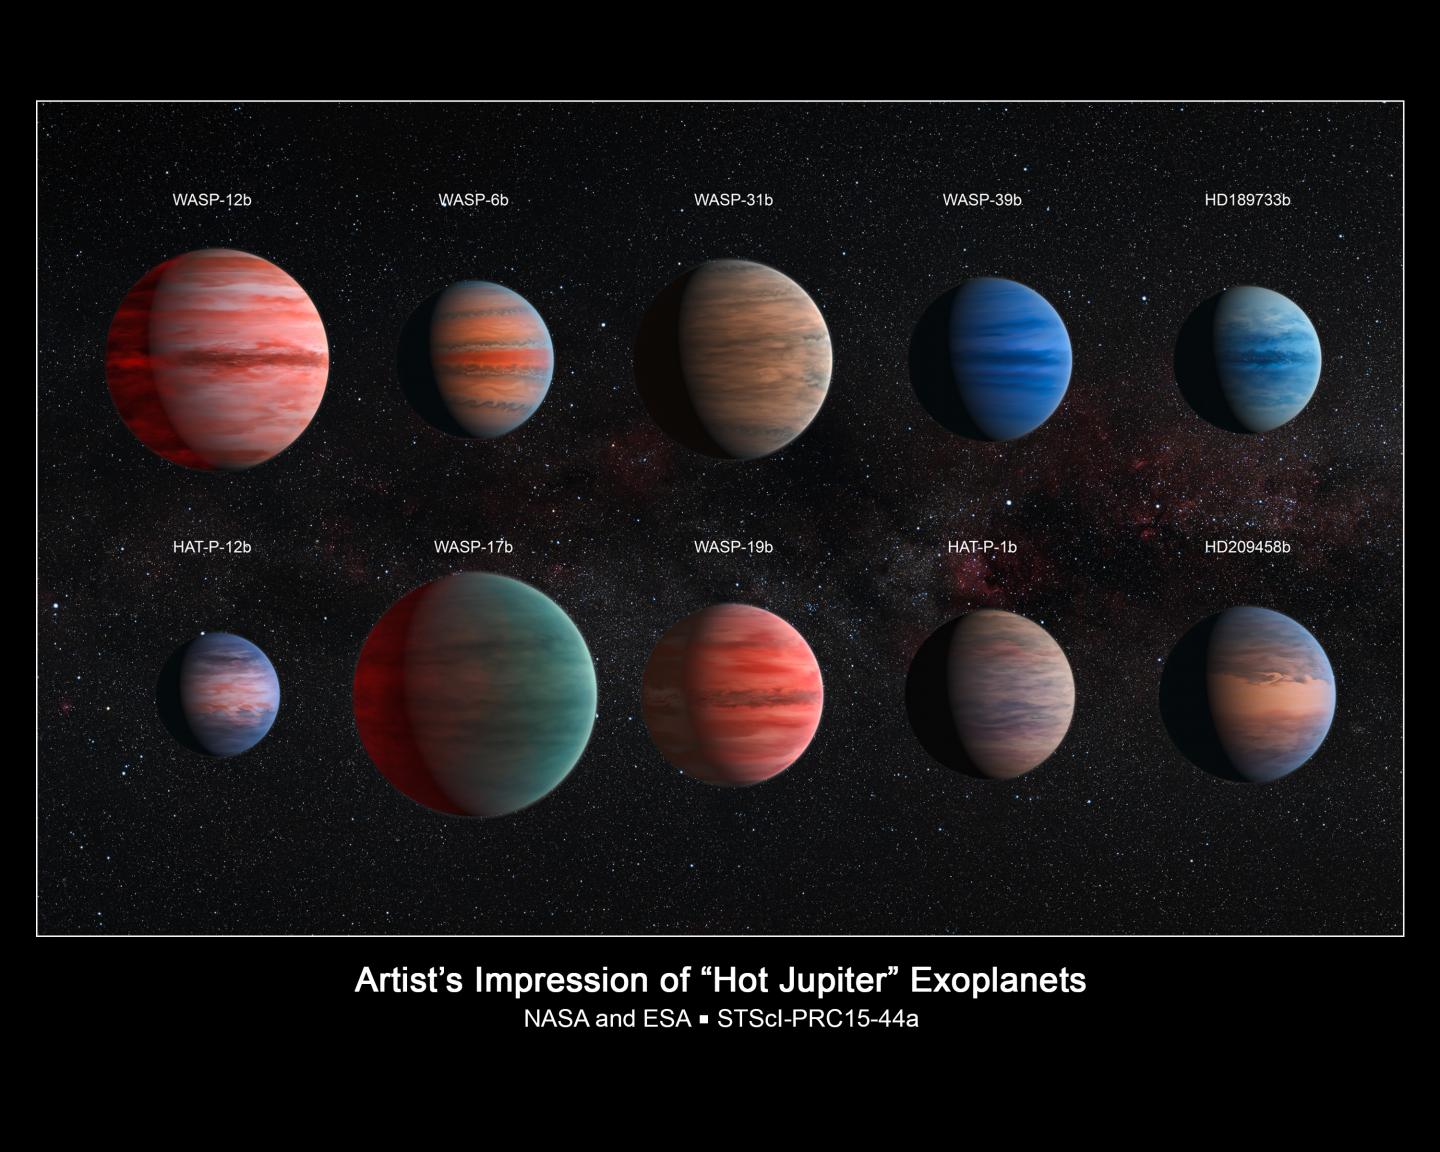 Artist's Impression of the 10 Hot Jupiter Exoplanets